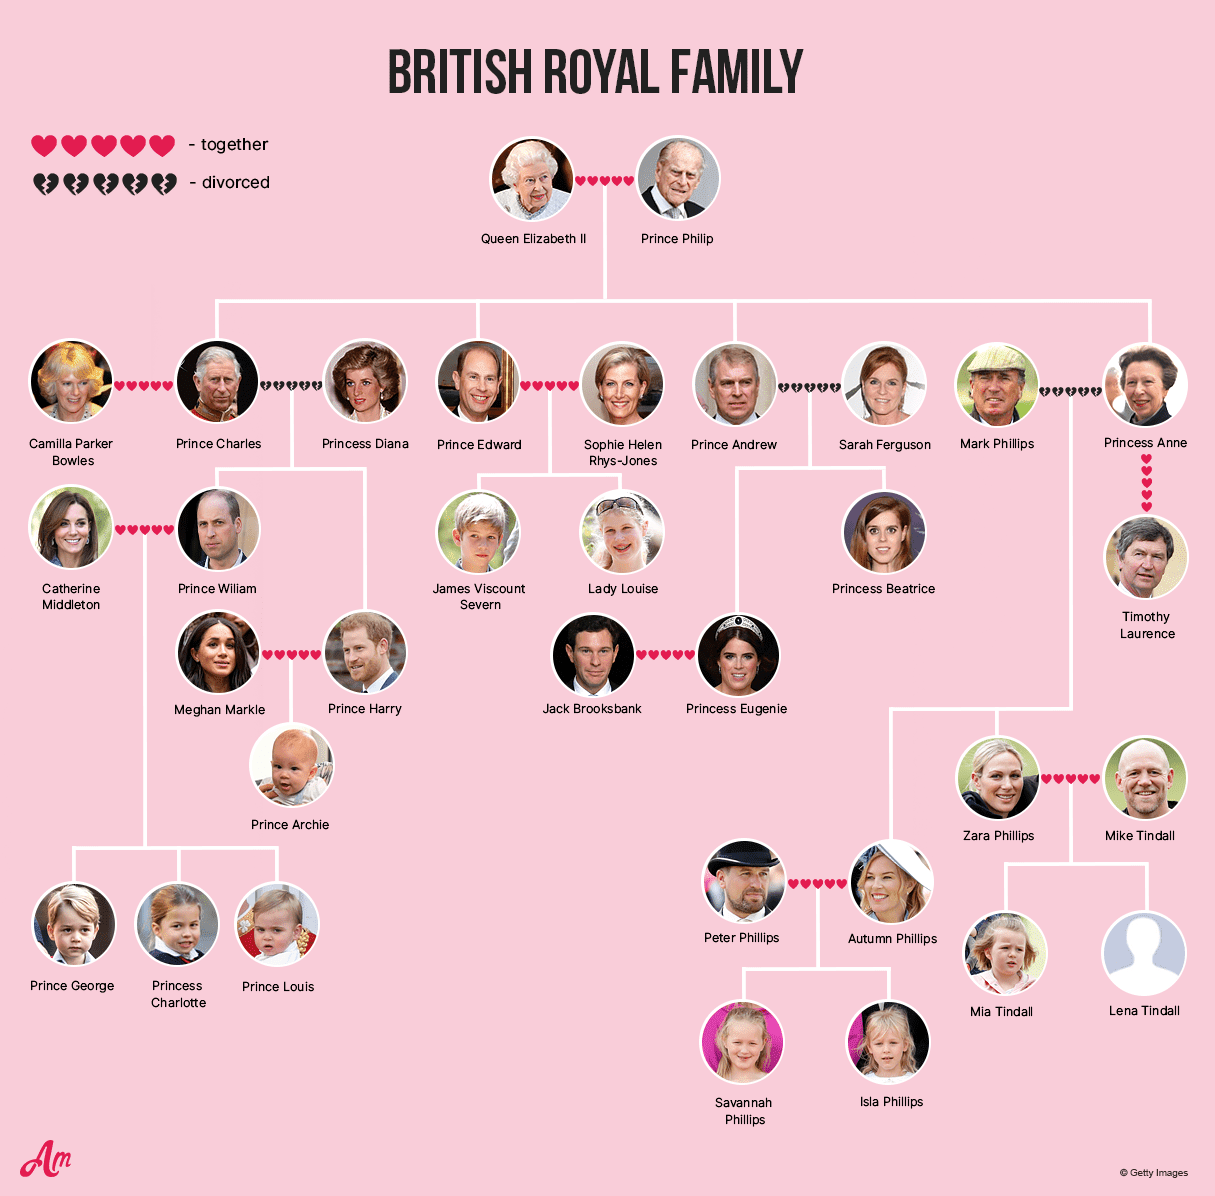 Royal Family Tree